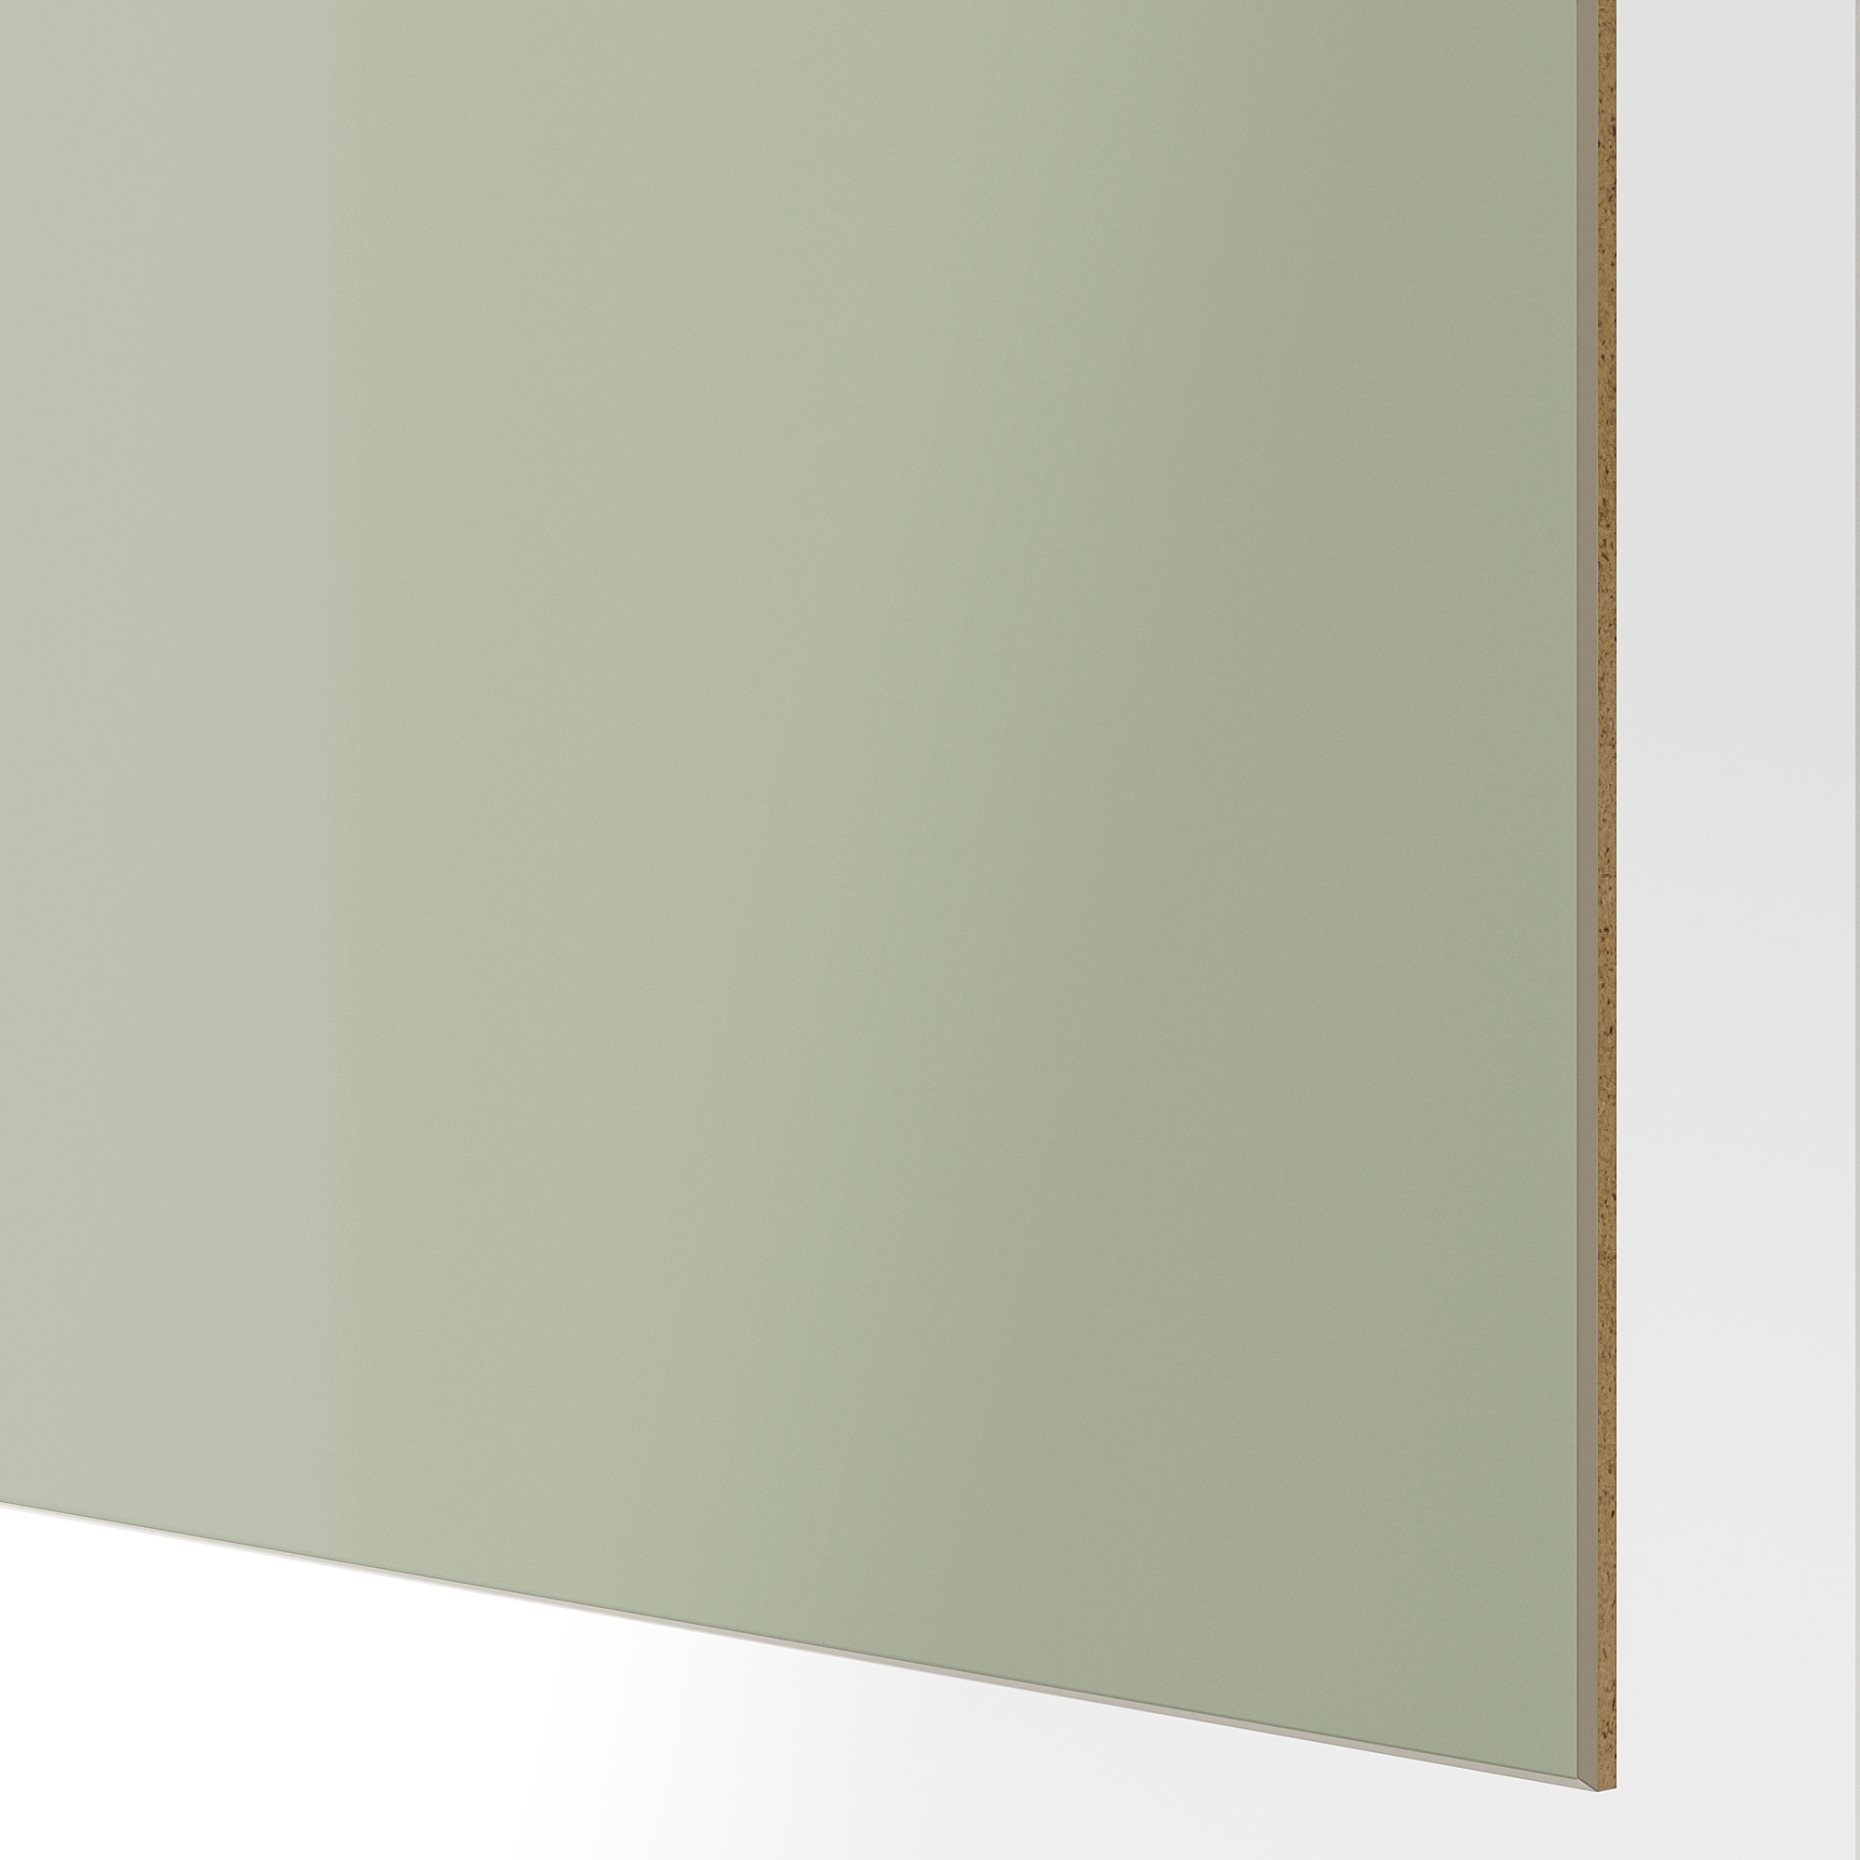 HOKKSUND, 4 panels for sliding door frame, 100x236 cm, 604.806.62